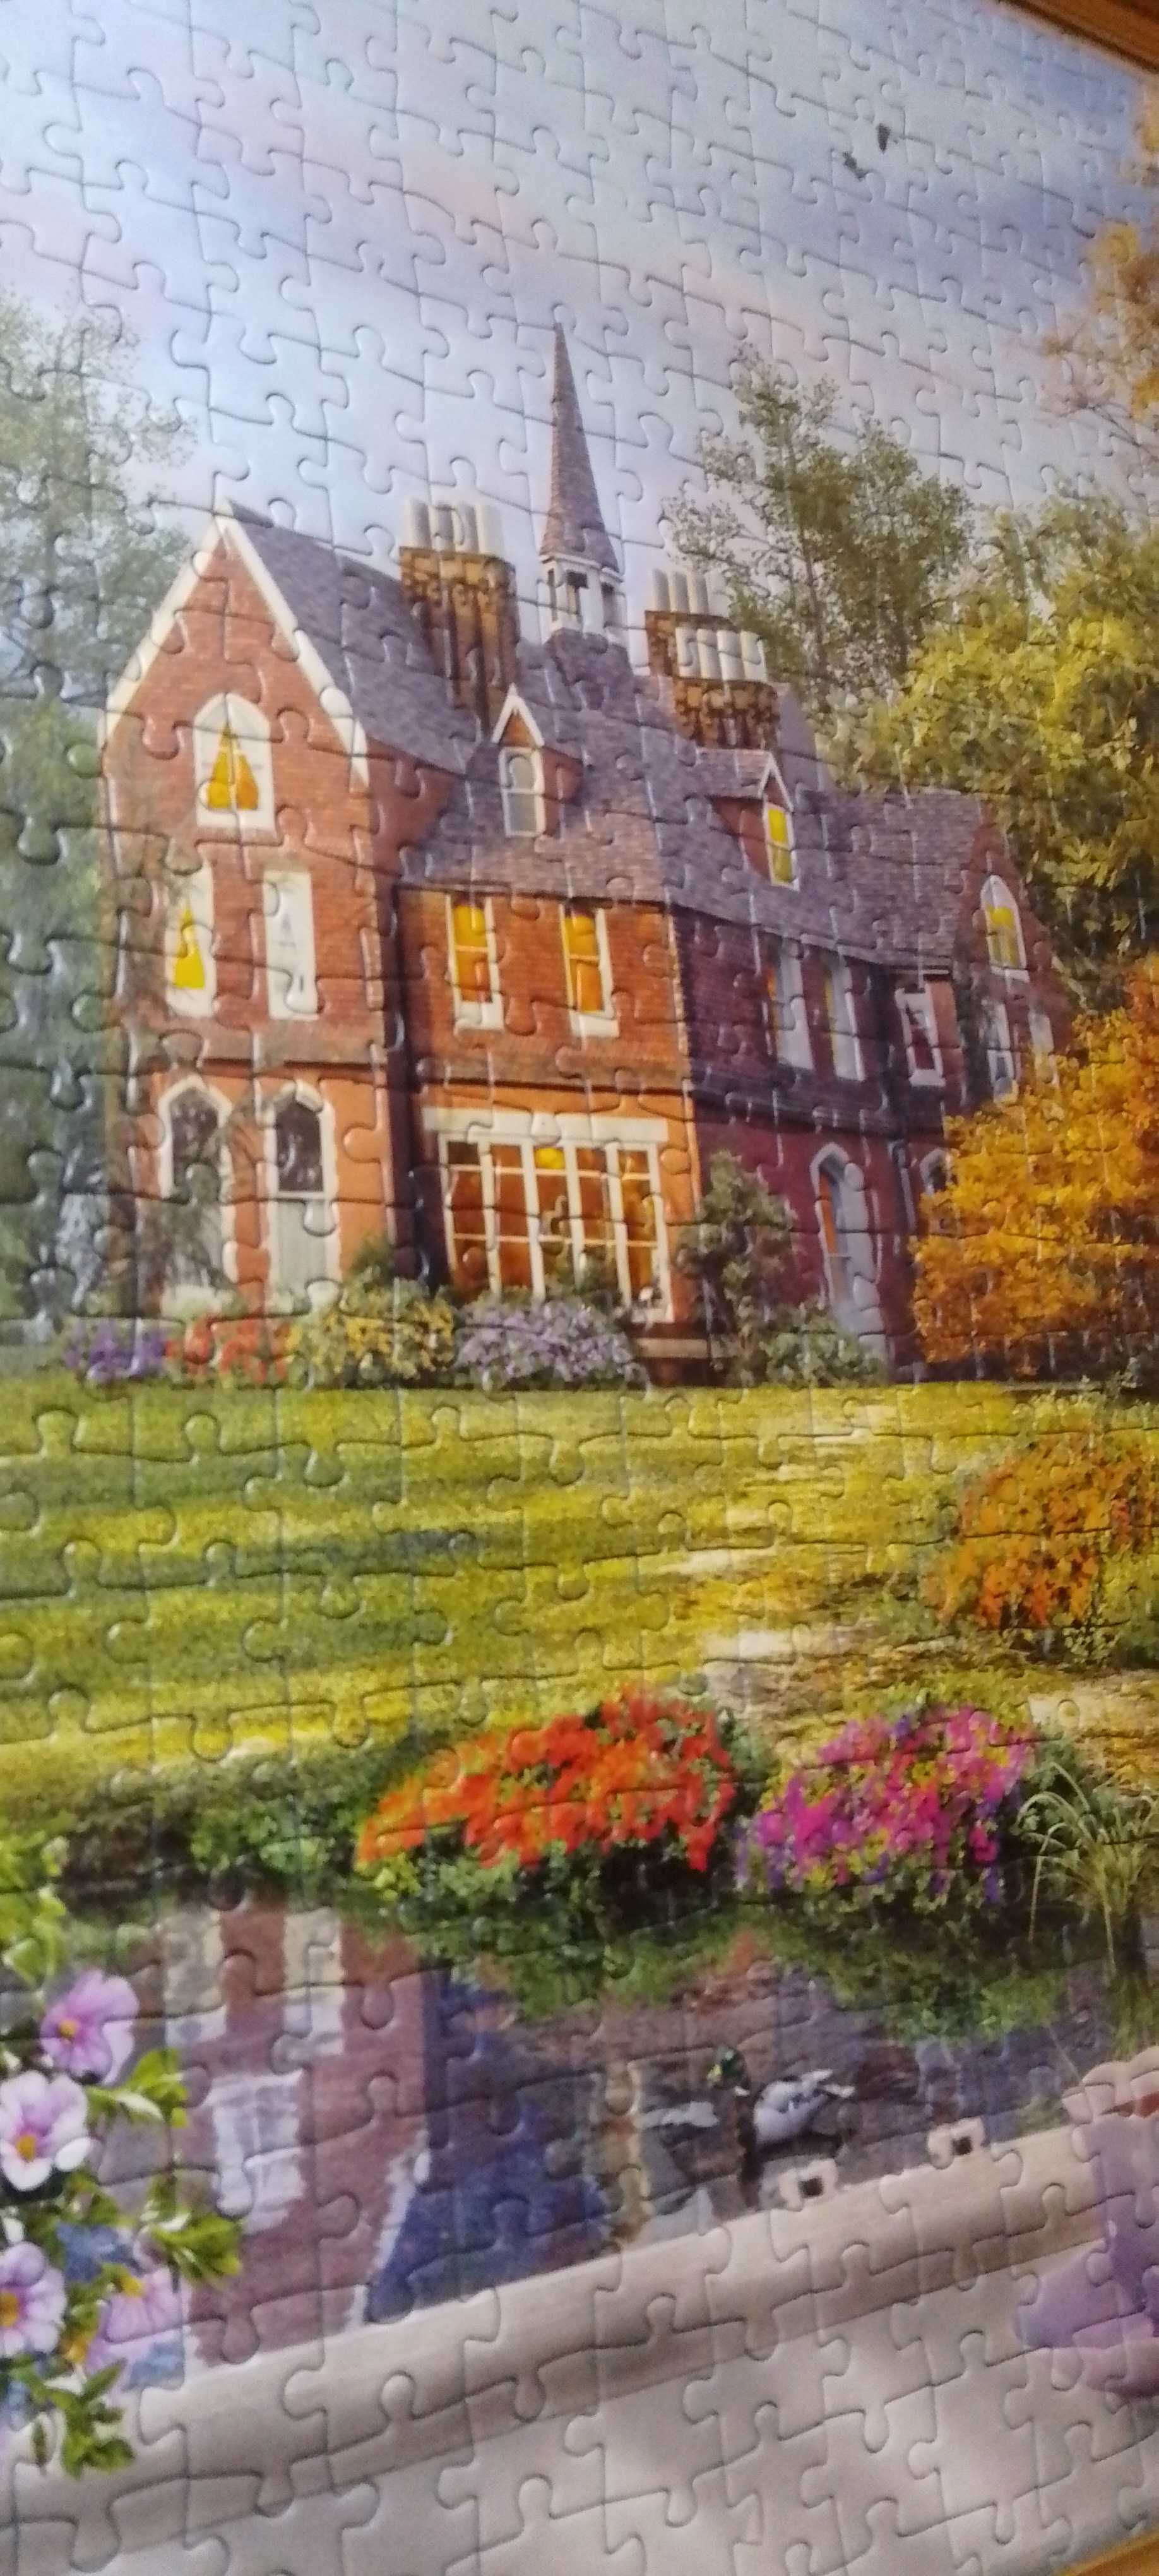 Vând tablou confecționat din puzzle.